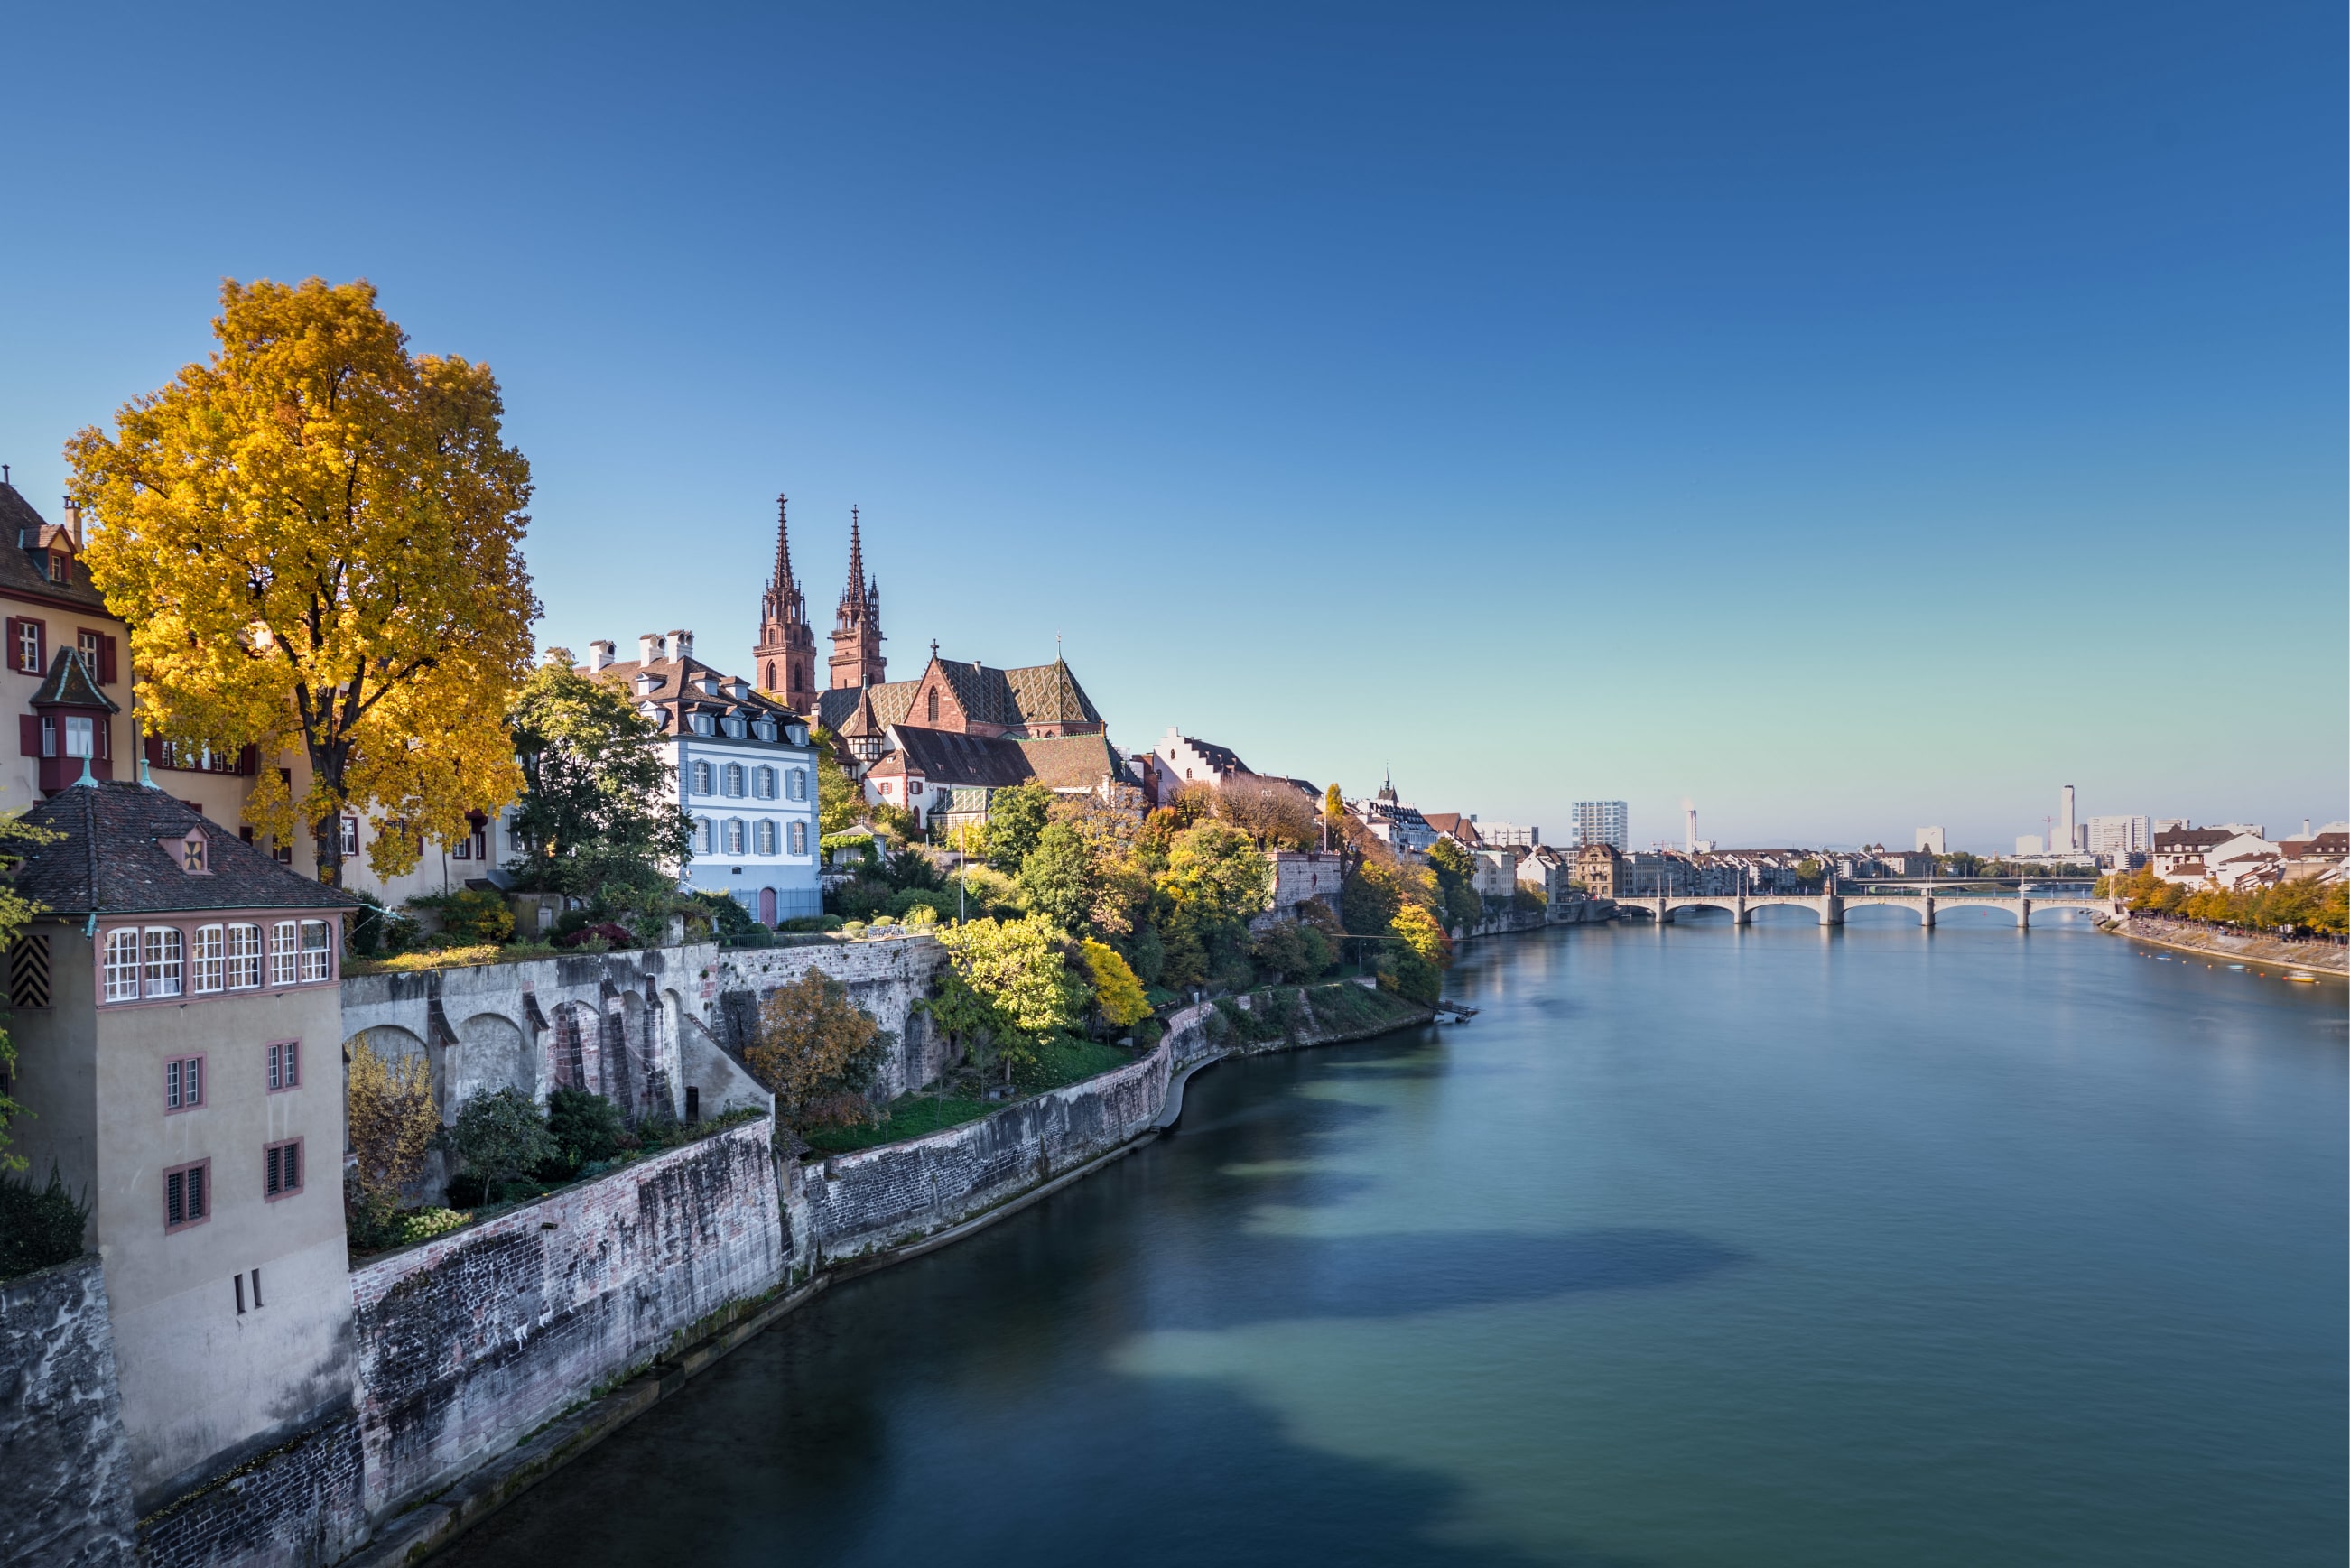 Bild von dem Rhein in der Basel Altstadt